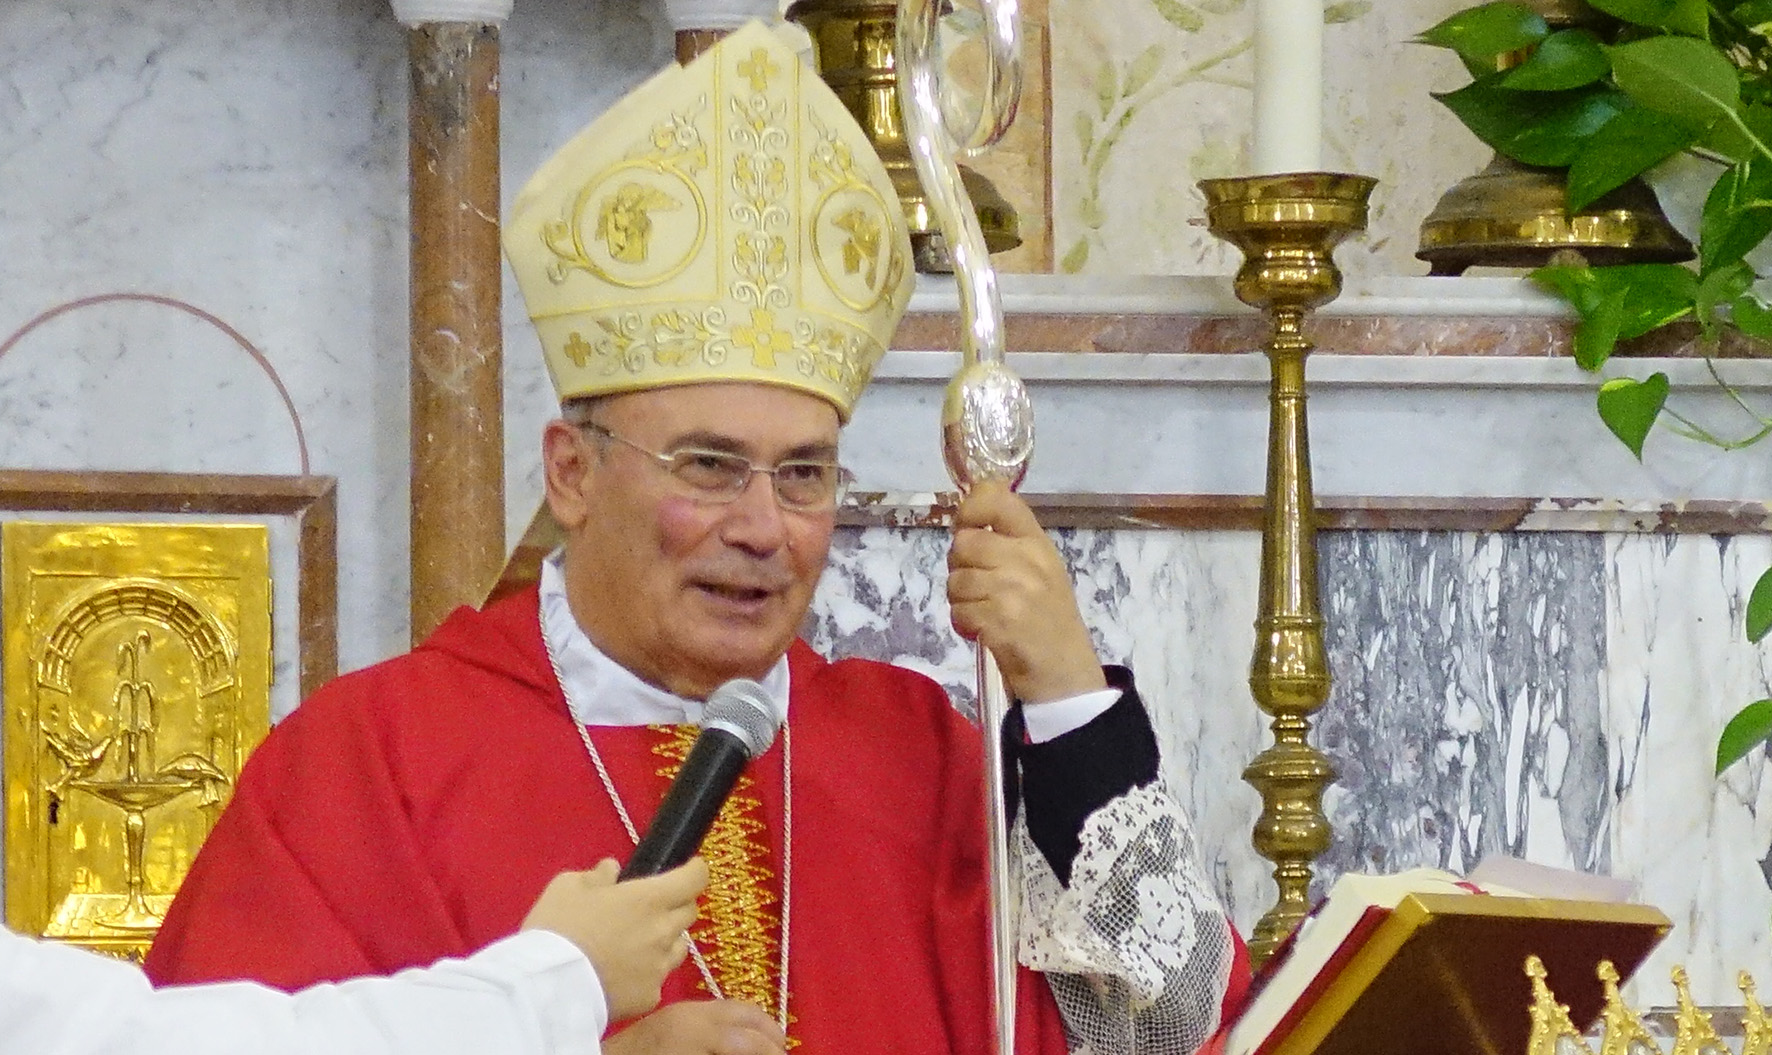 Morte Anna Elisa Fontana, vescovo Giurdanella: “Delitto che grida forte contro Dio e l’Umanità”